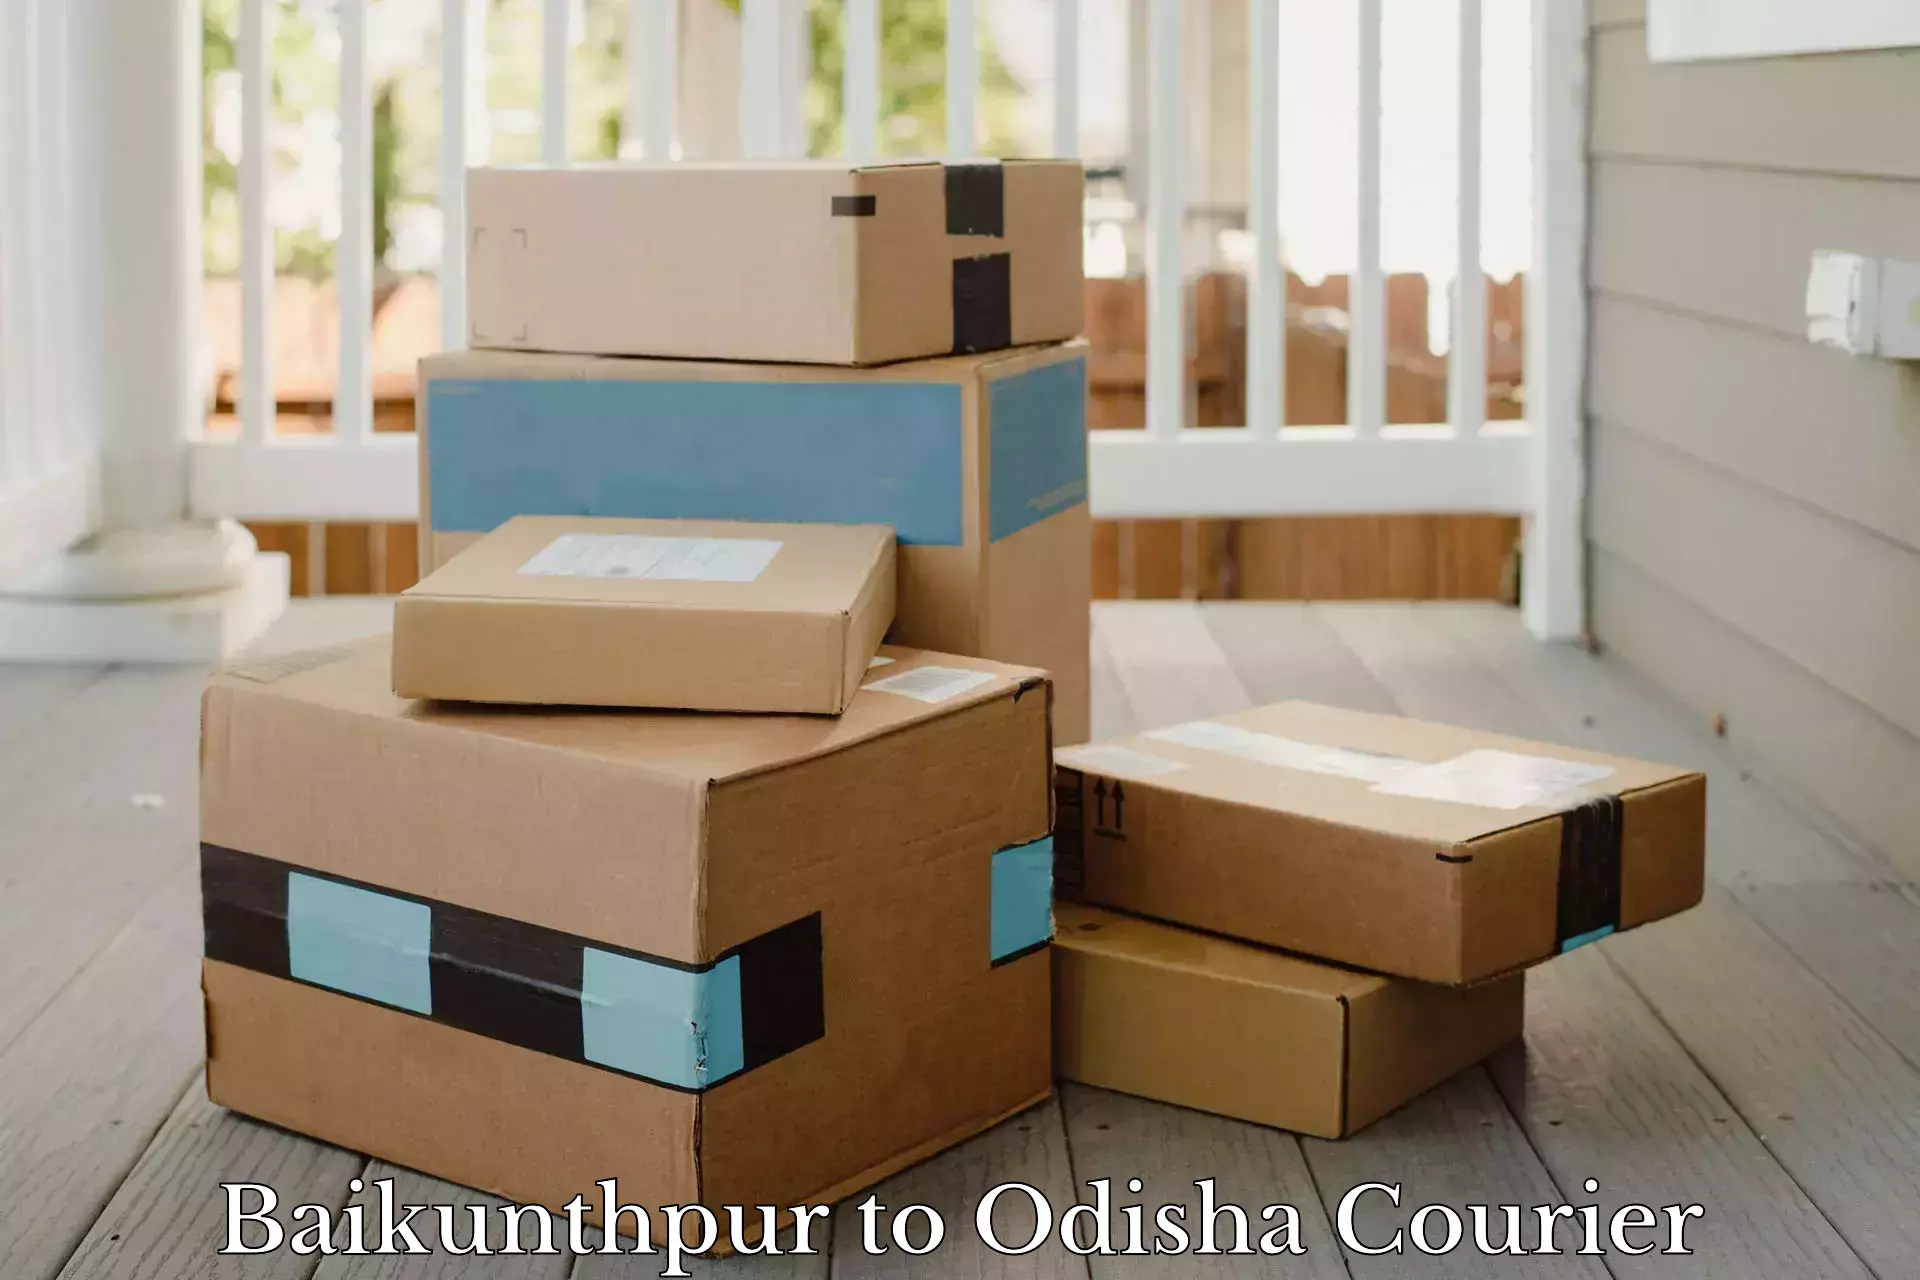 Customer-oriented courier services Baikunthpur to Kishorenagar